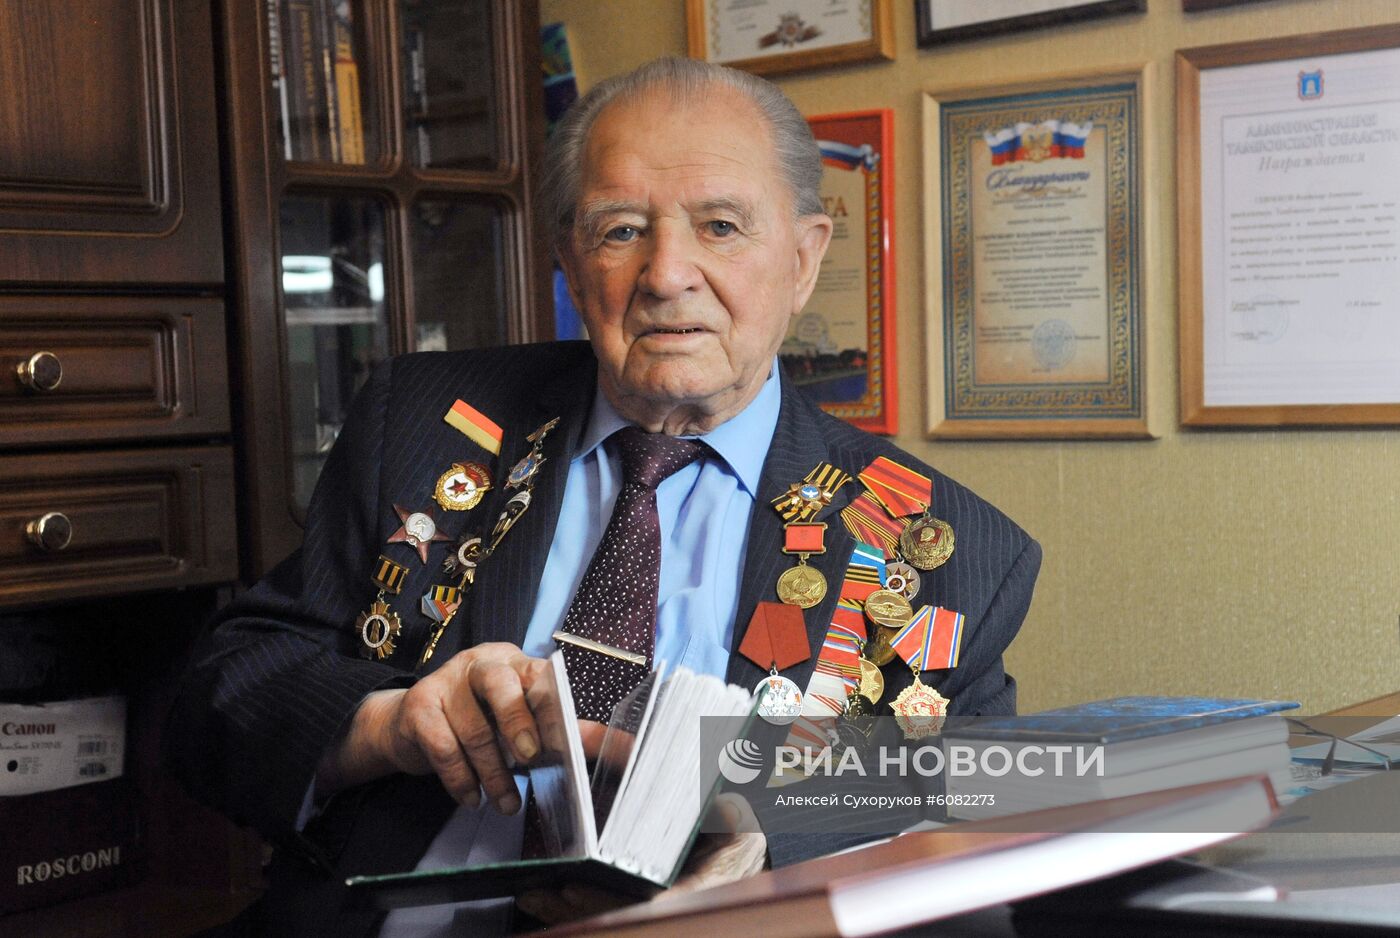 Ветеран Великой Отечественной войны В.А. Севрюков